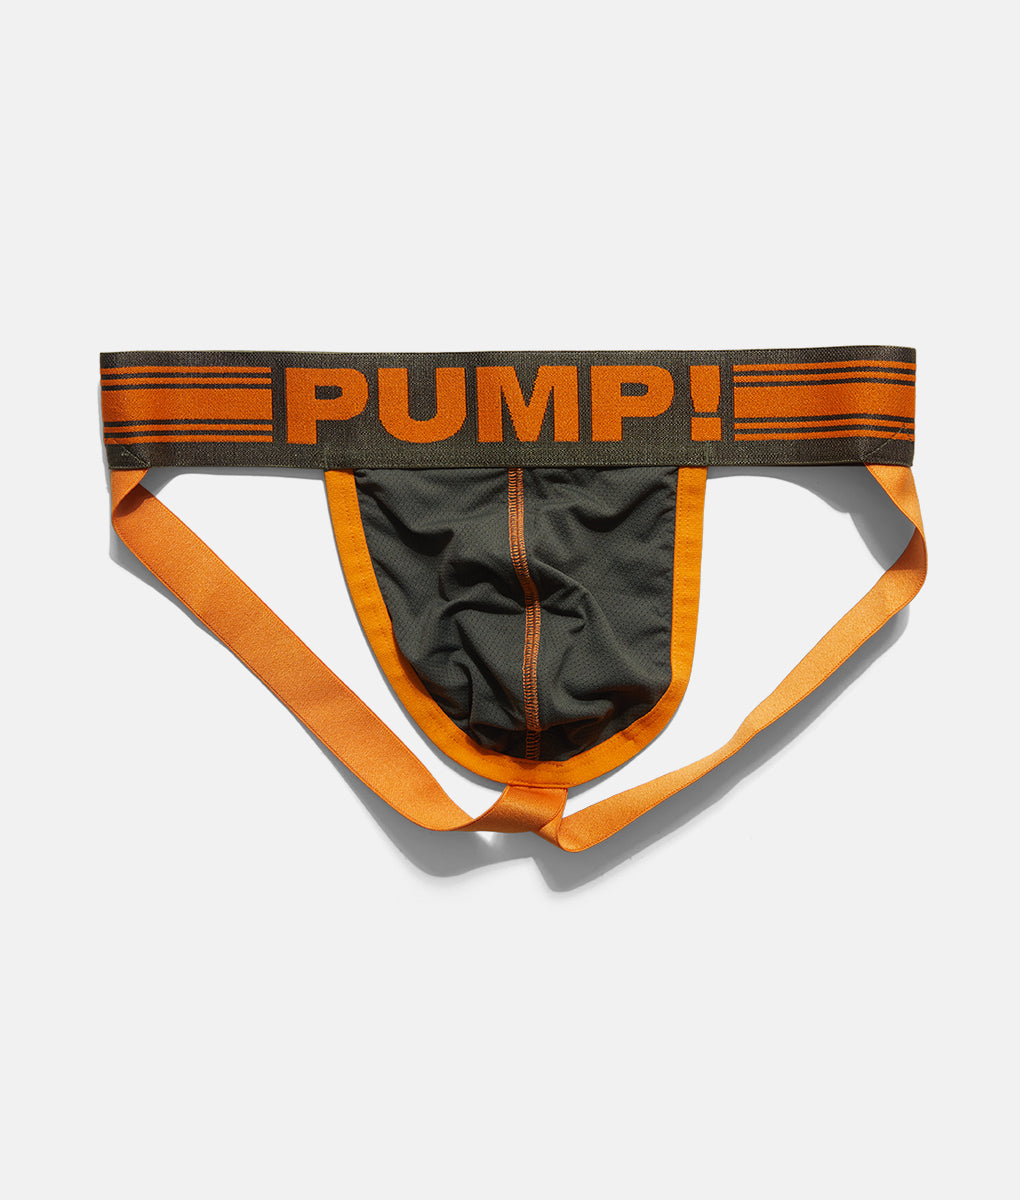 PUMP! Sportboy Activate Jockstrap - Underwear Expert